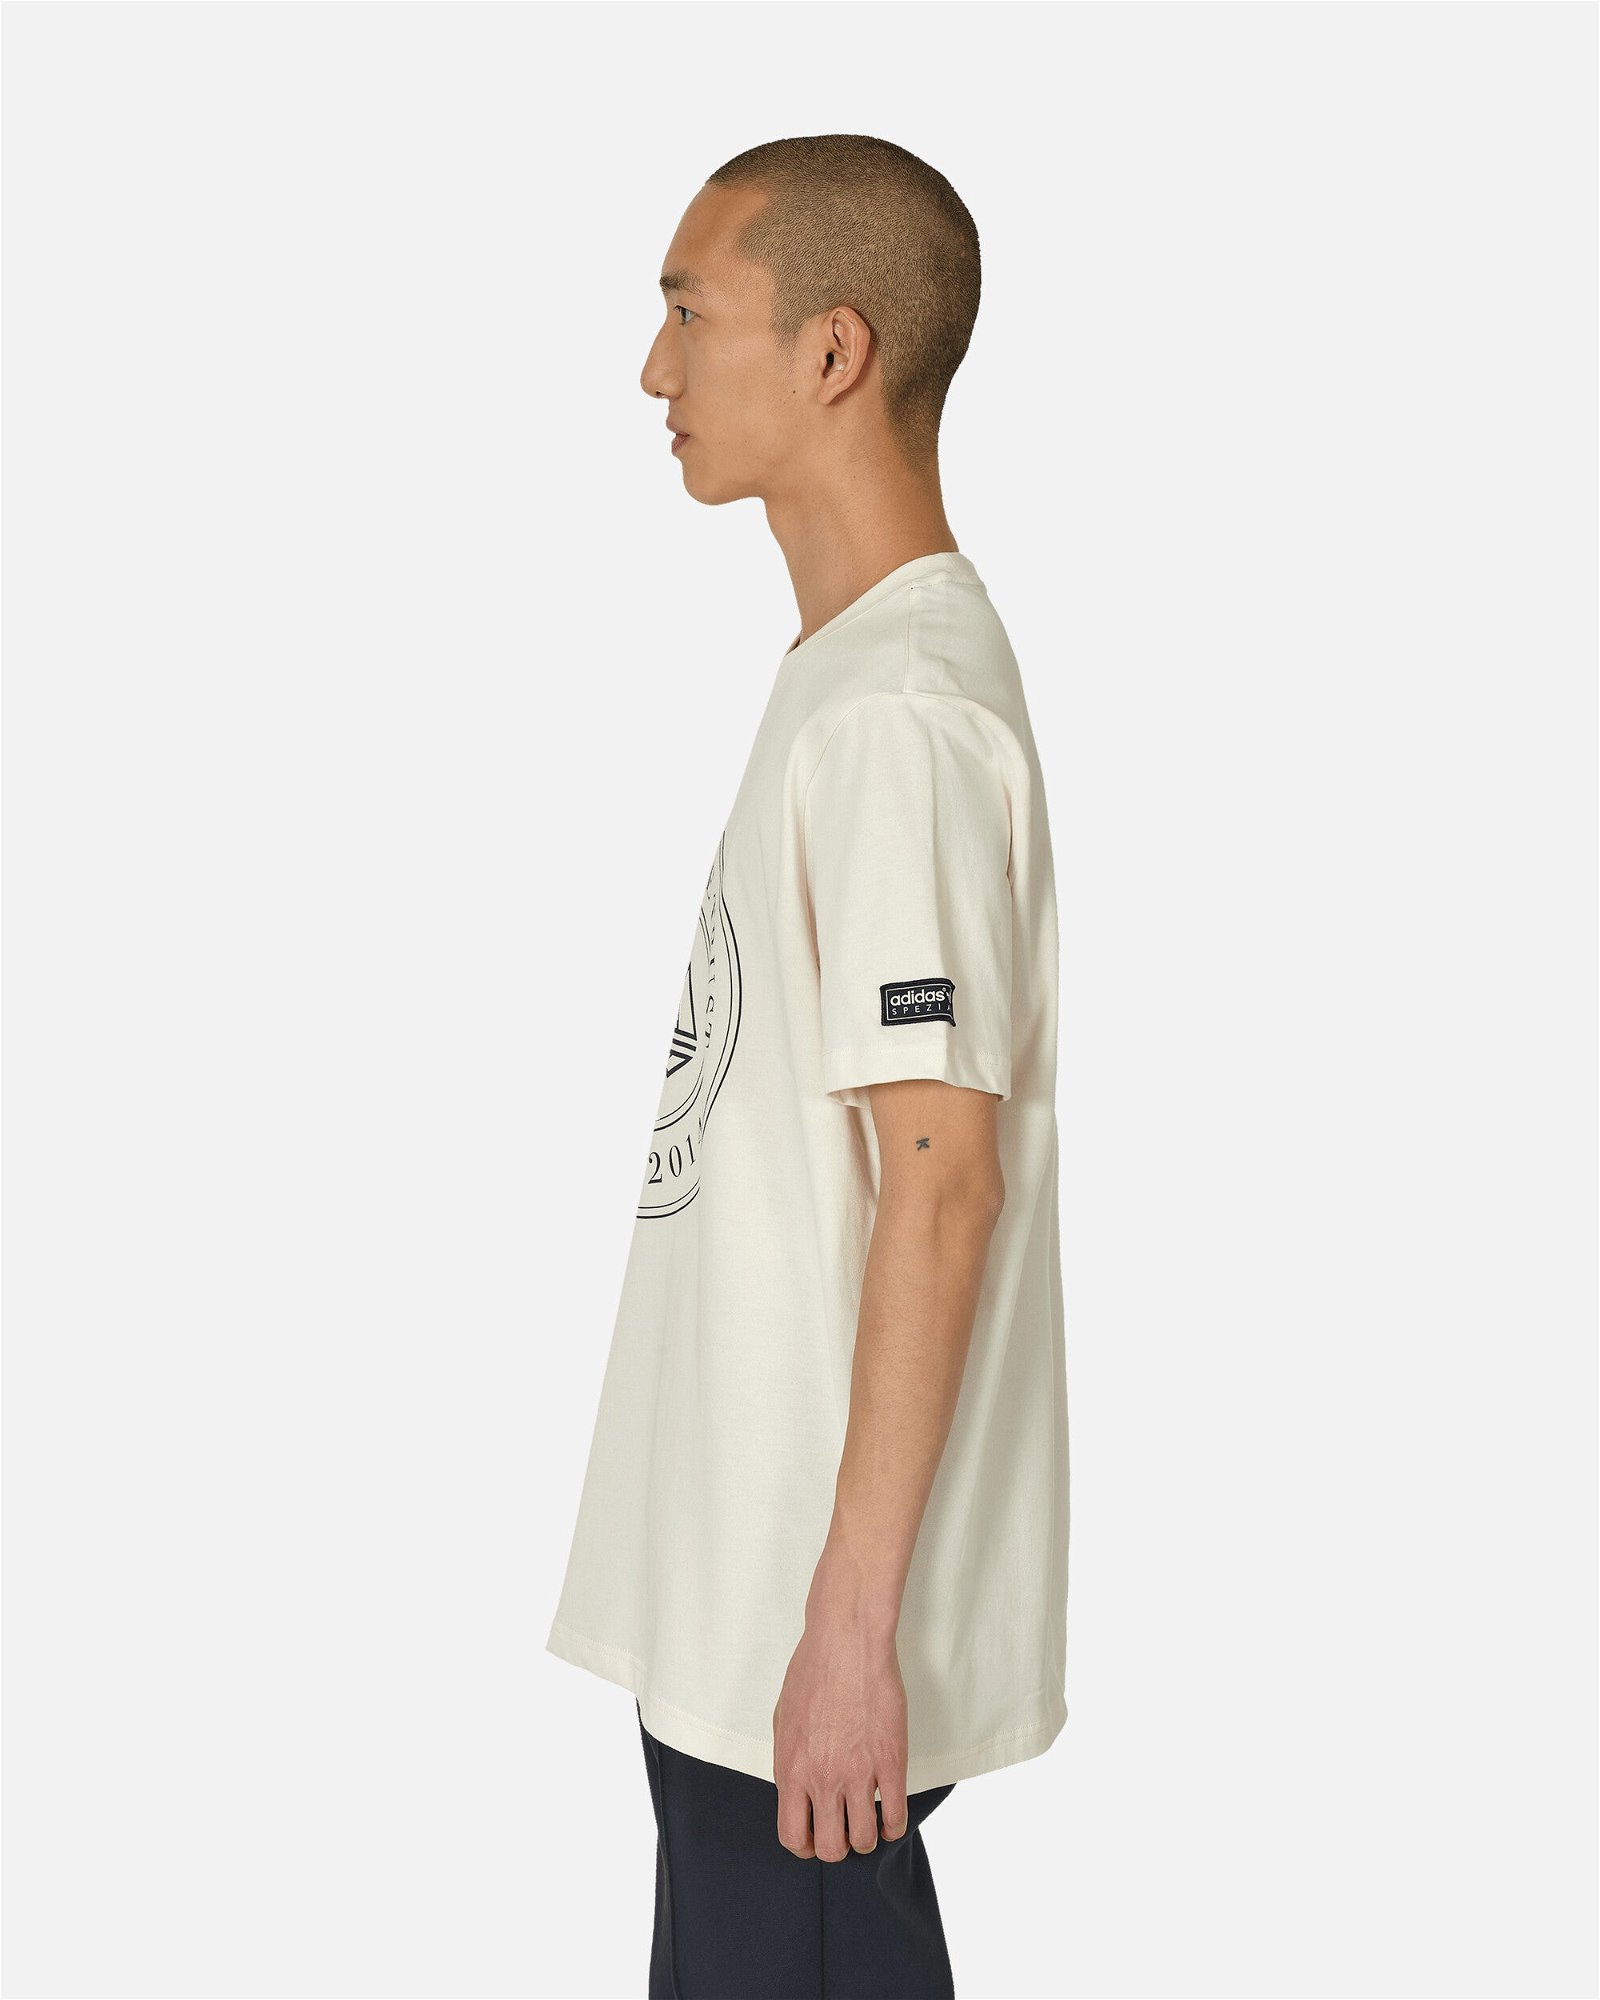 SPZL Mod Trefoil 10 T-Shirt Chalk White